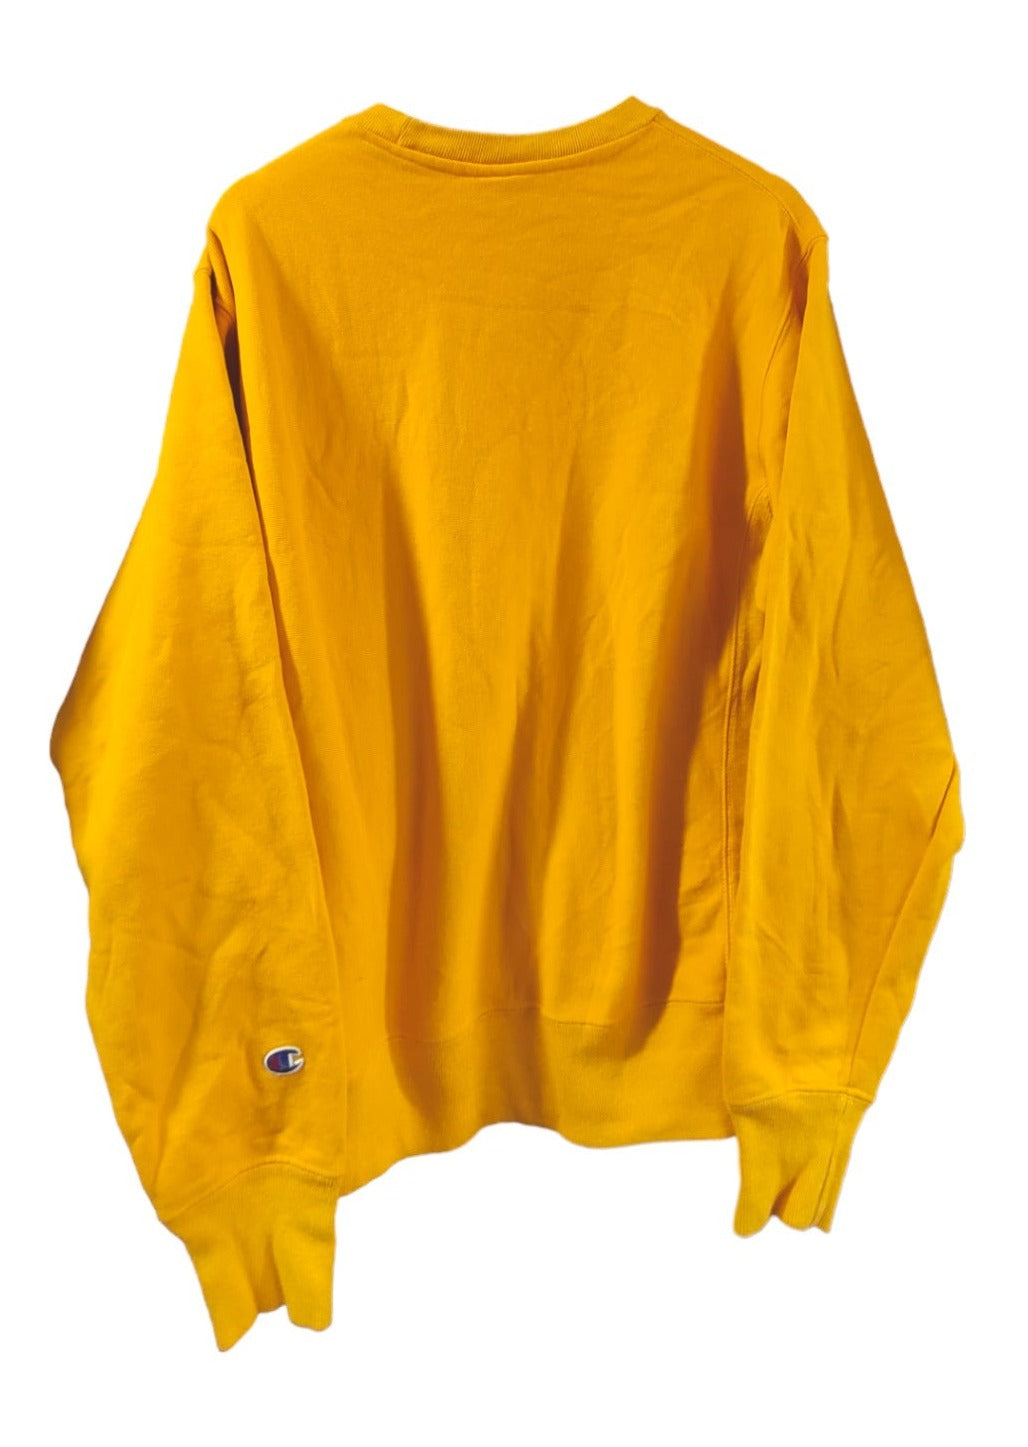 Ανδρική Φούτερ Μπλούζα CHAMPION σε Κροκί Χρώμα (Medium)